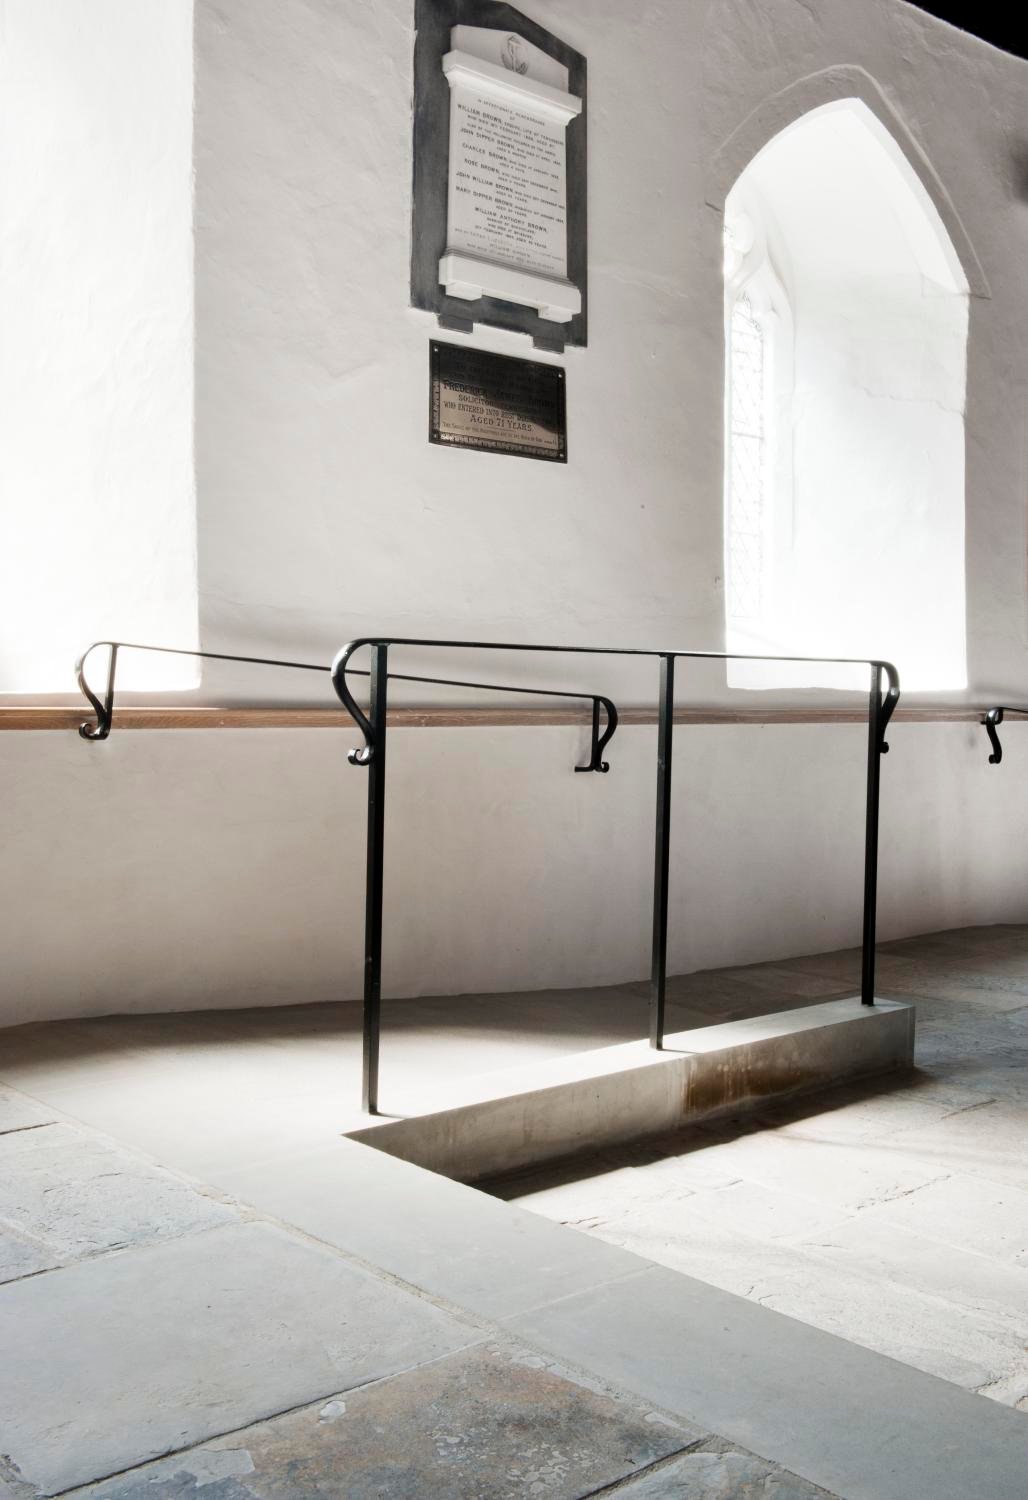 Access ramp and stair rail inside a church